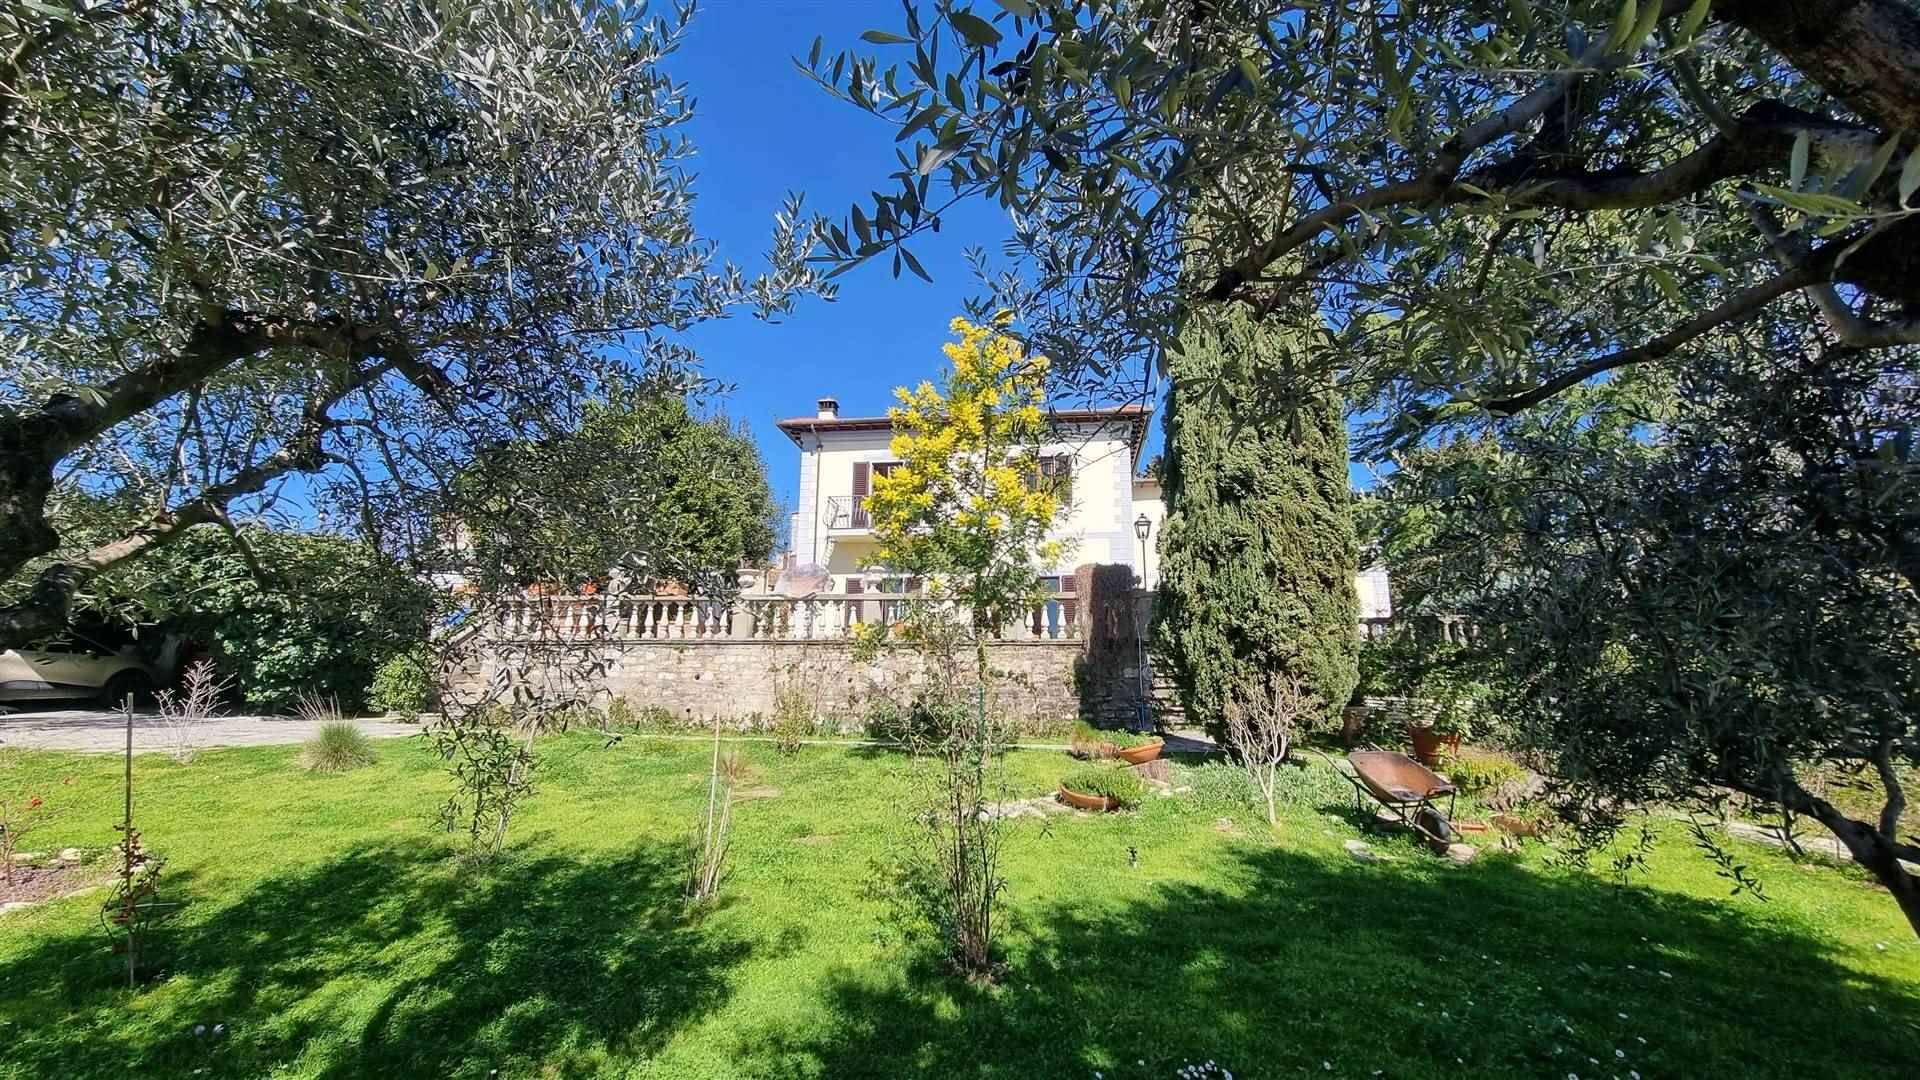 Bolognese - Pian di San Bartolo: Splendida villa duecentesca di 490 mq circa immersa nel verde del suo parco privato carrabile di oltre 800 mq circa. 